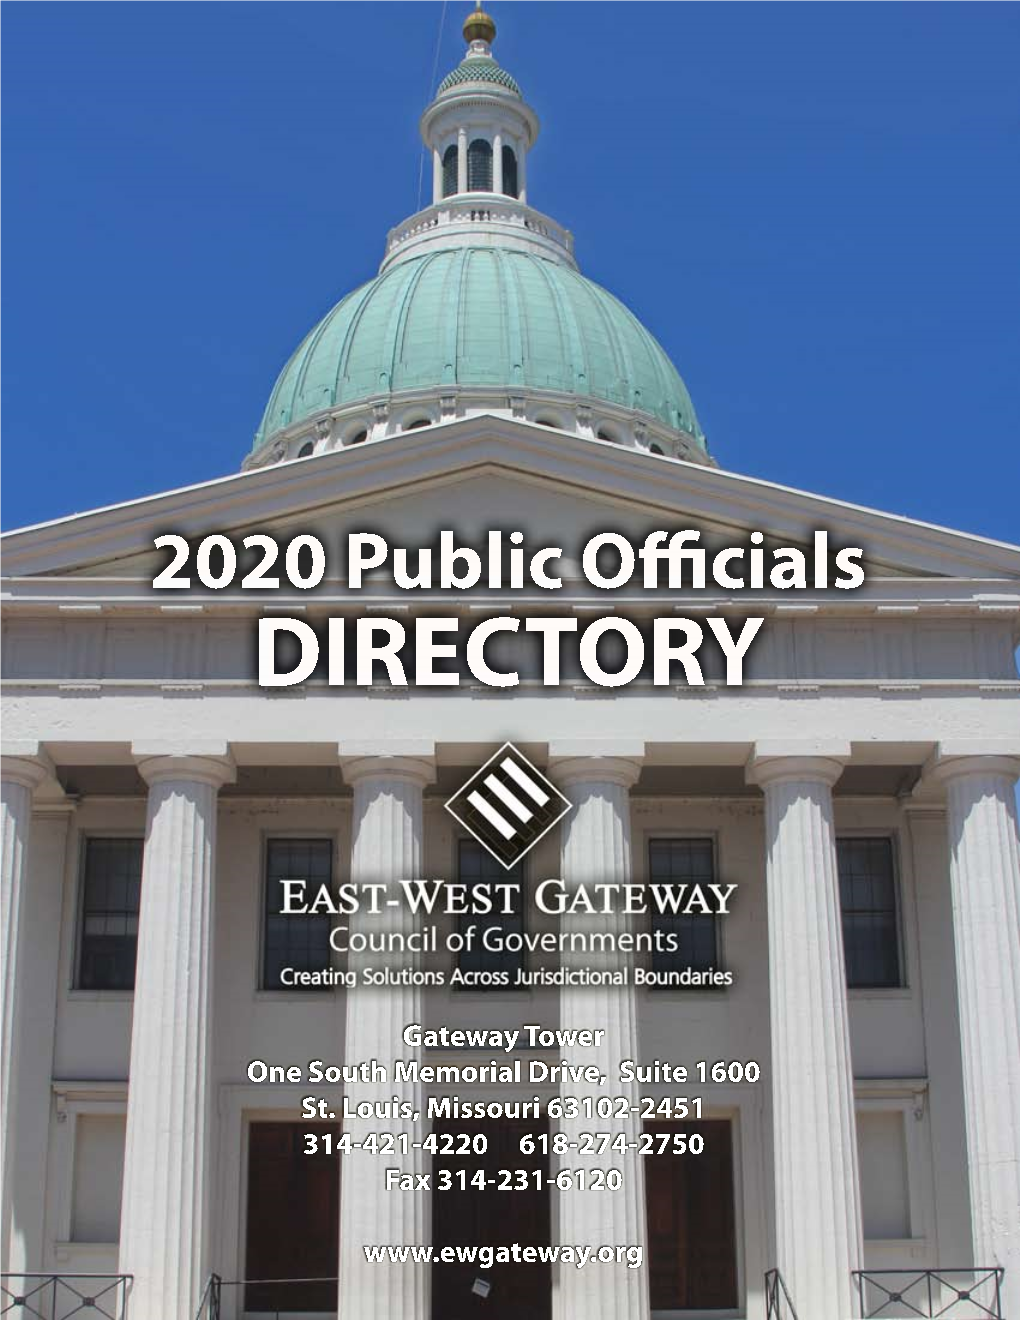 East-West Gateway's 2020 Public Officials Directory